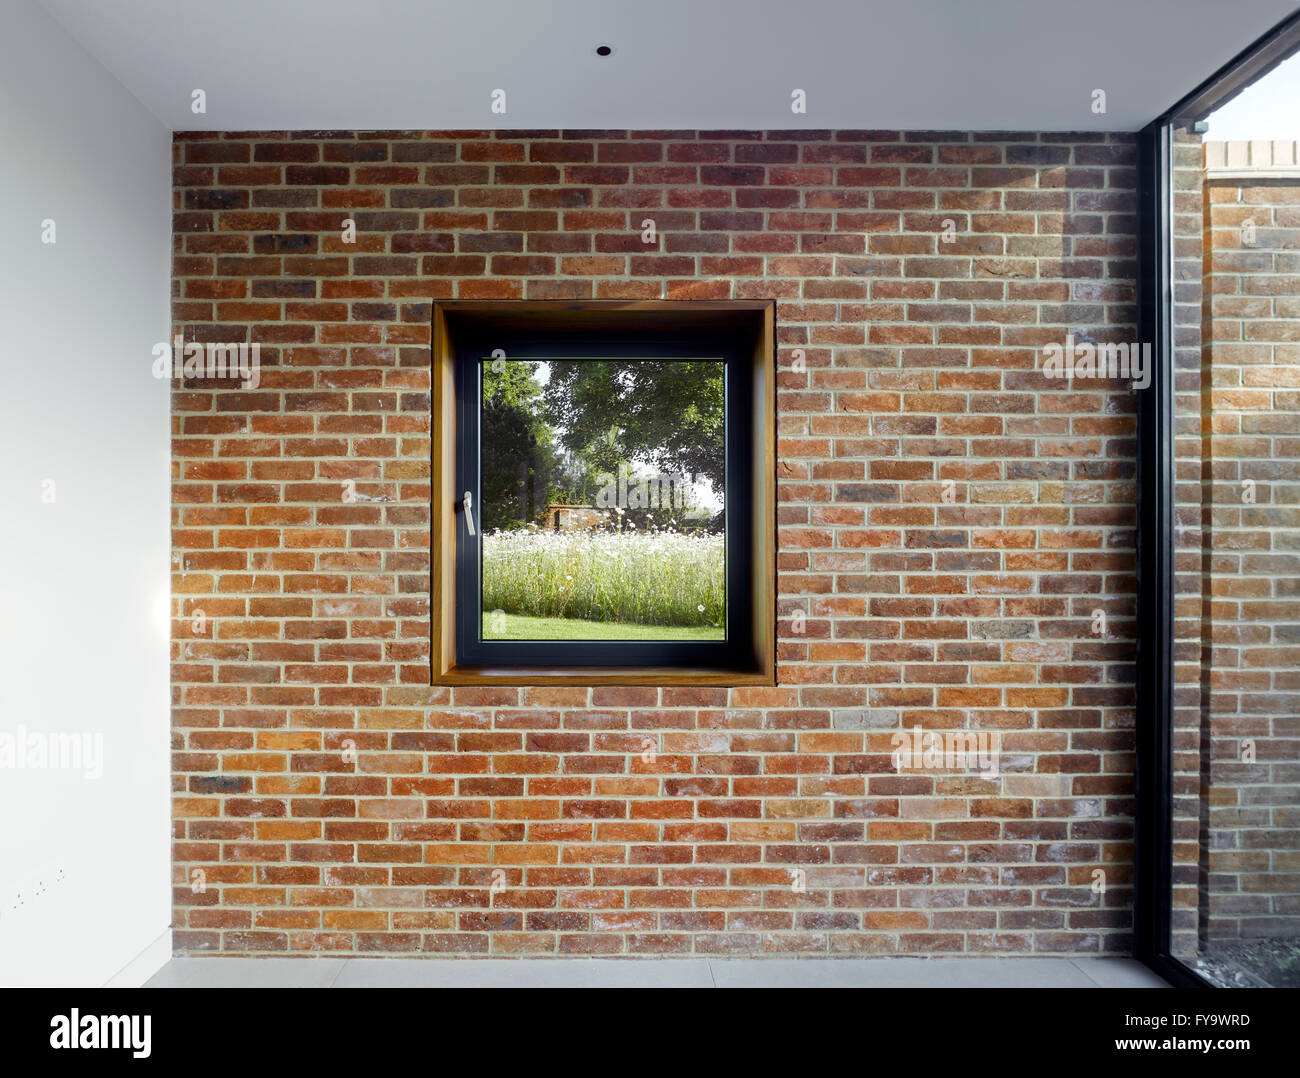 Gartenmauer-Bild-Fenster. Cheeran Haus, Lower Basildon, Großbritannien. Architekt: John Pardey Architekten, 2015. Stockfoto